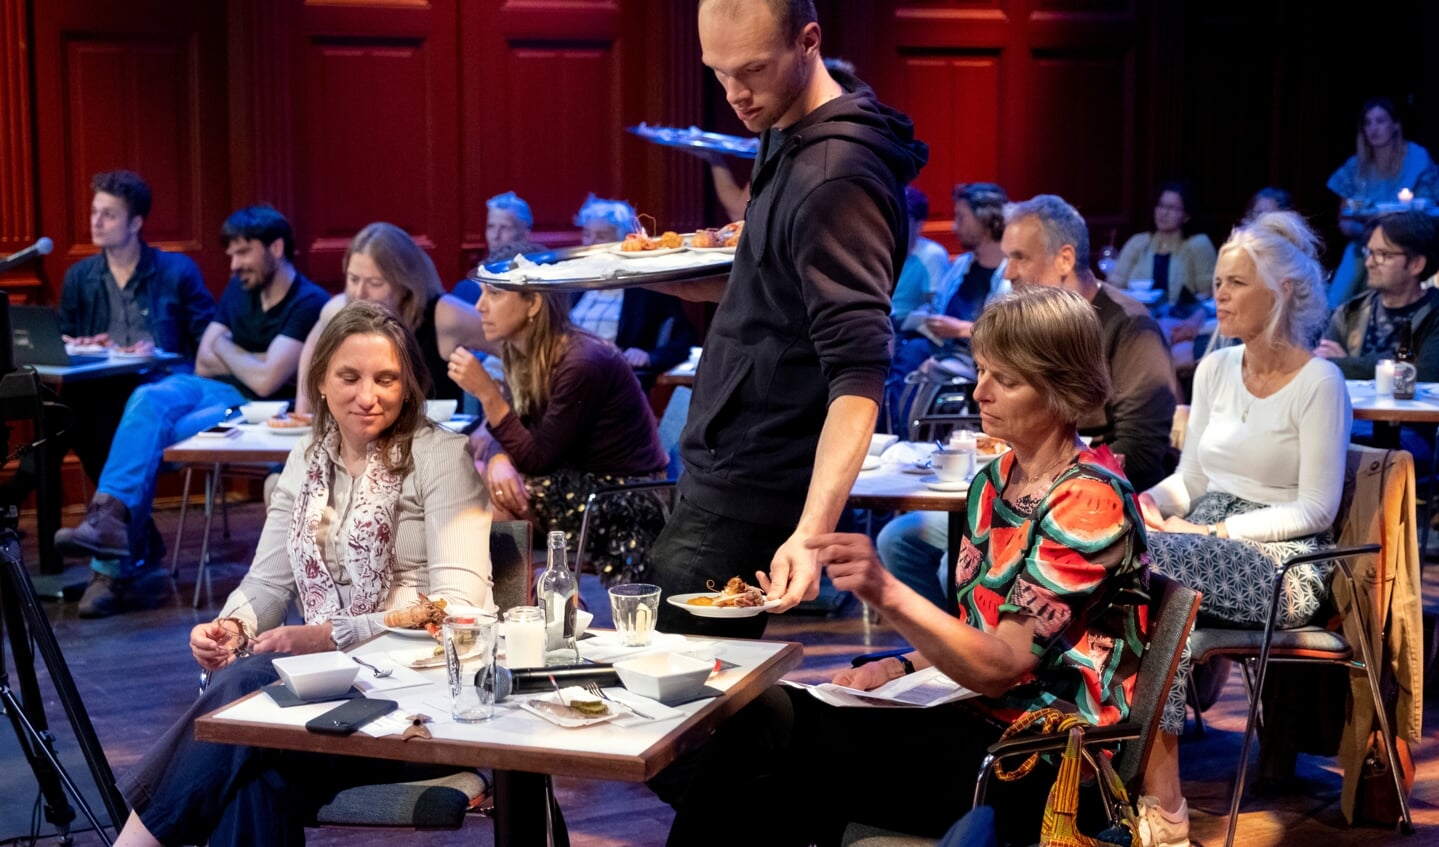 H Professor Tinka Murk (rechts) en Groen Links-Kamerlid Laura Bromet krijgen langoustines geserveerd in De Balie te Amsterdam. (Foto: Jan Boeve/De Balie)